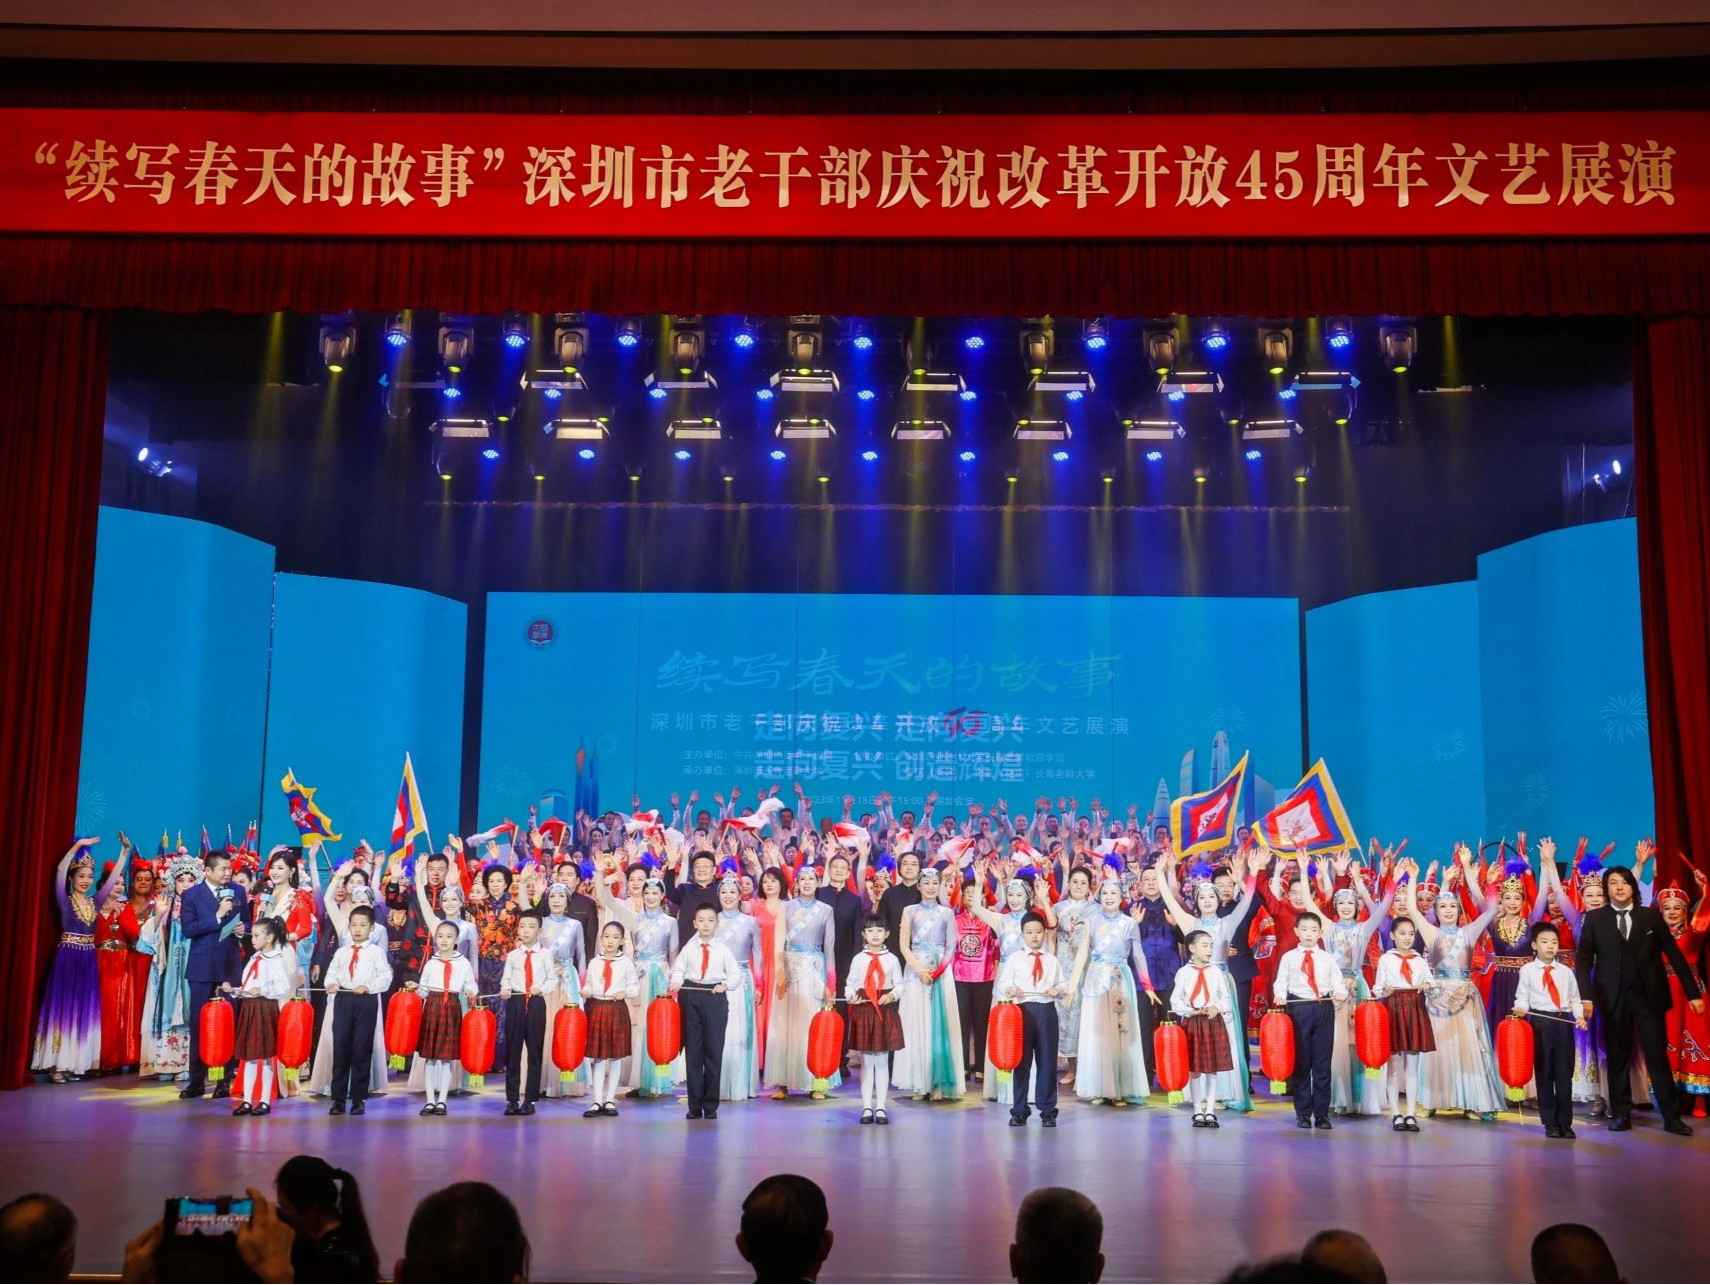 深圳市老干部庆祝改革开放45周年文艺展演举行